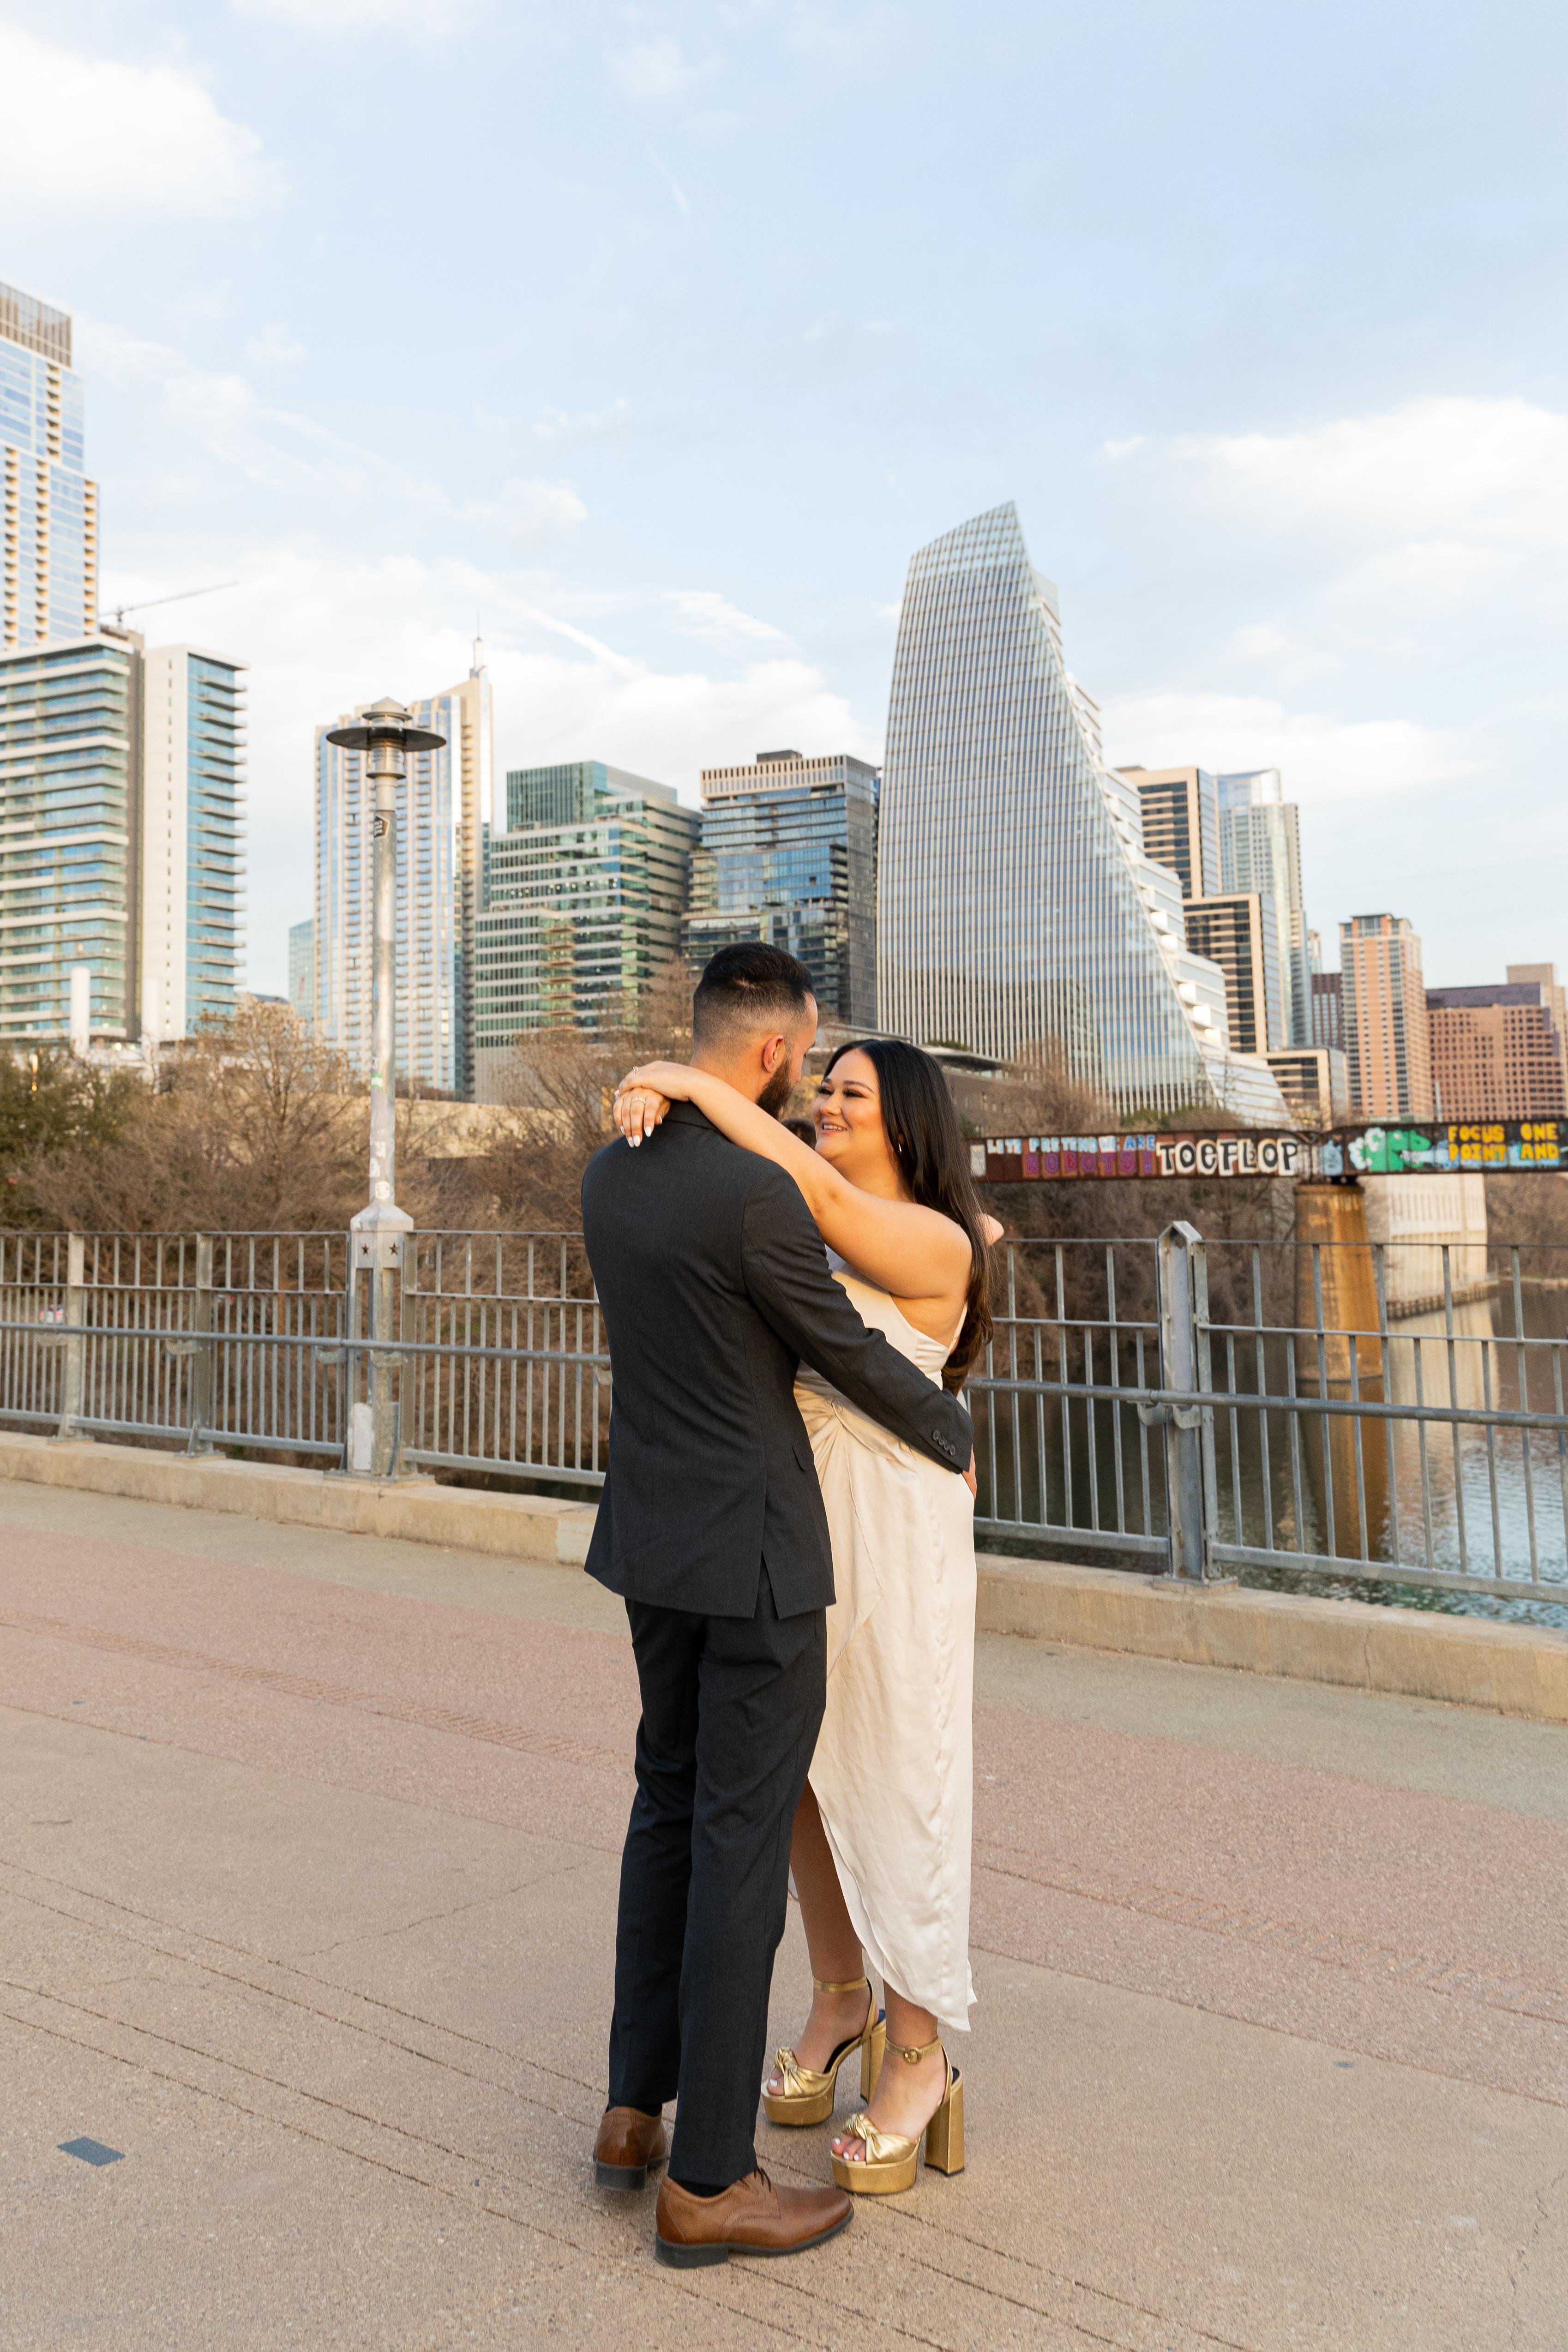 The Wedding Website of Jadelyn Lopez and Jairo Castillo